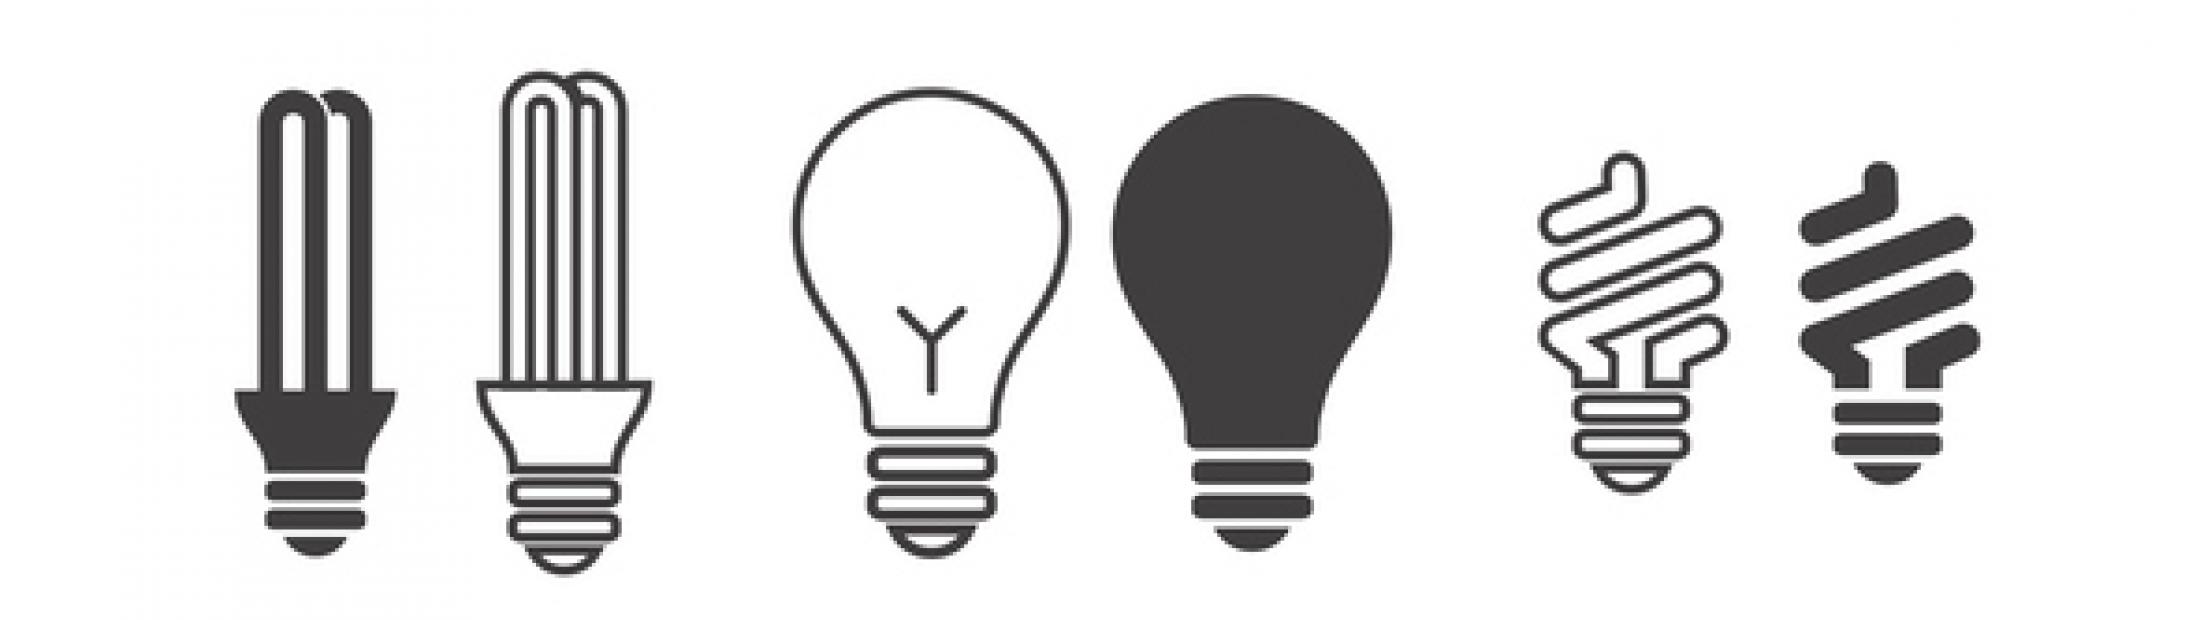 Tipos de bombillas: 3 claves para apostar por el ahorro